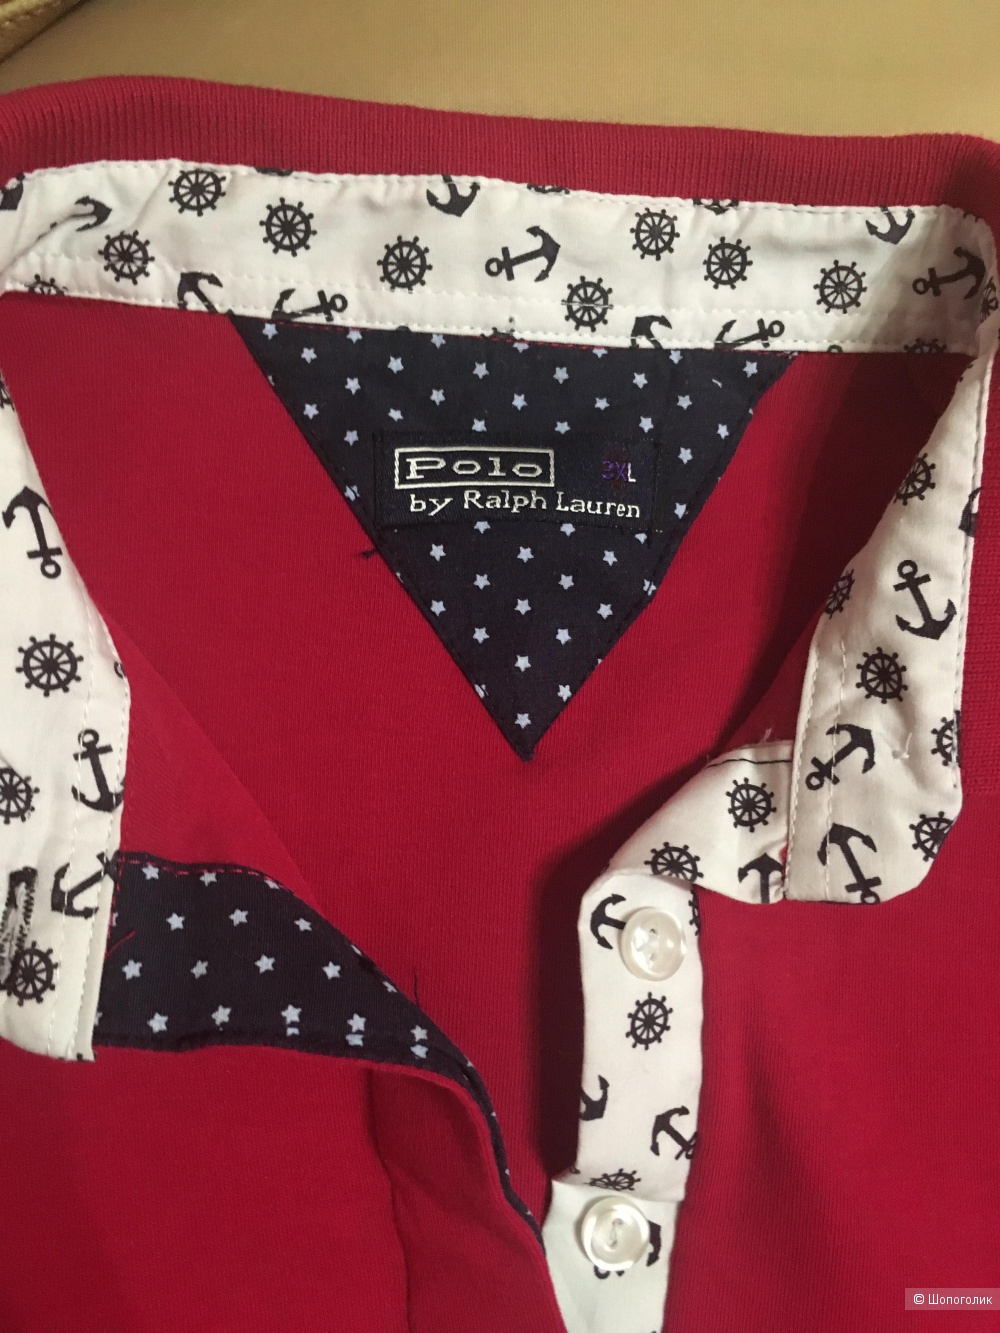 Рубашка-поло Polo by Ralph Lauren размер L/M